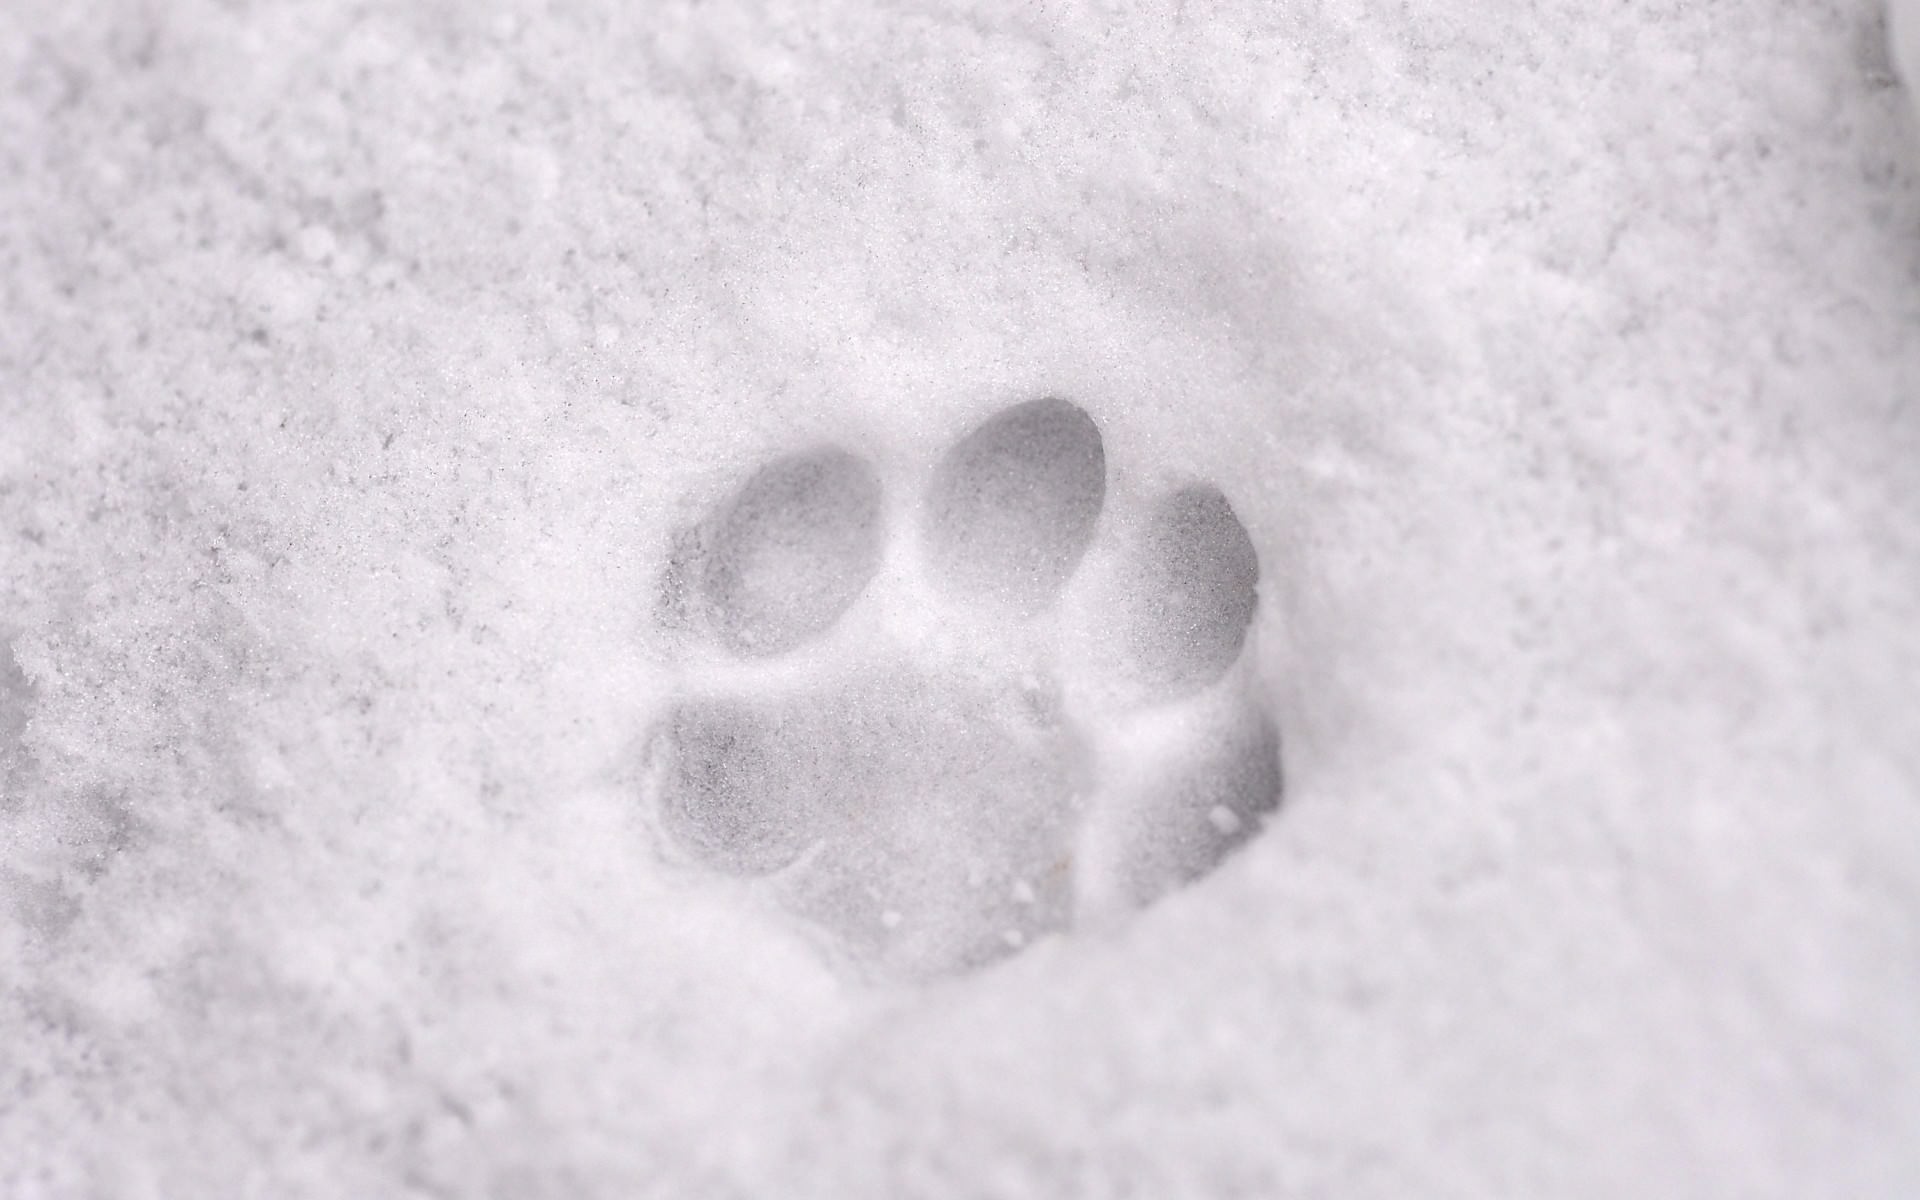 Следы 11 5. Следы на снегу. Собачьи следы на снегу. Следы лап на снегу. Следы кошки на снегу.